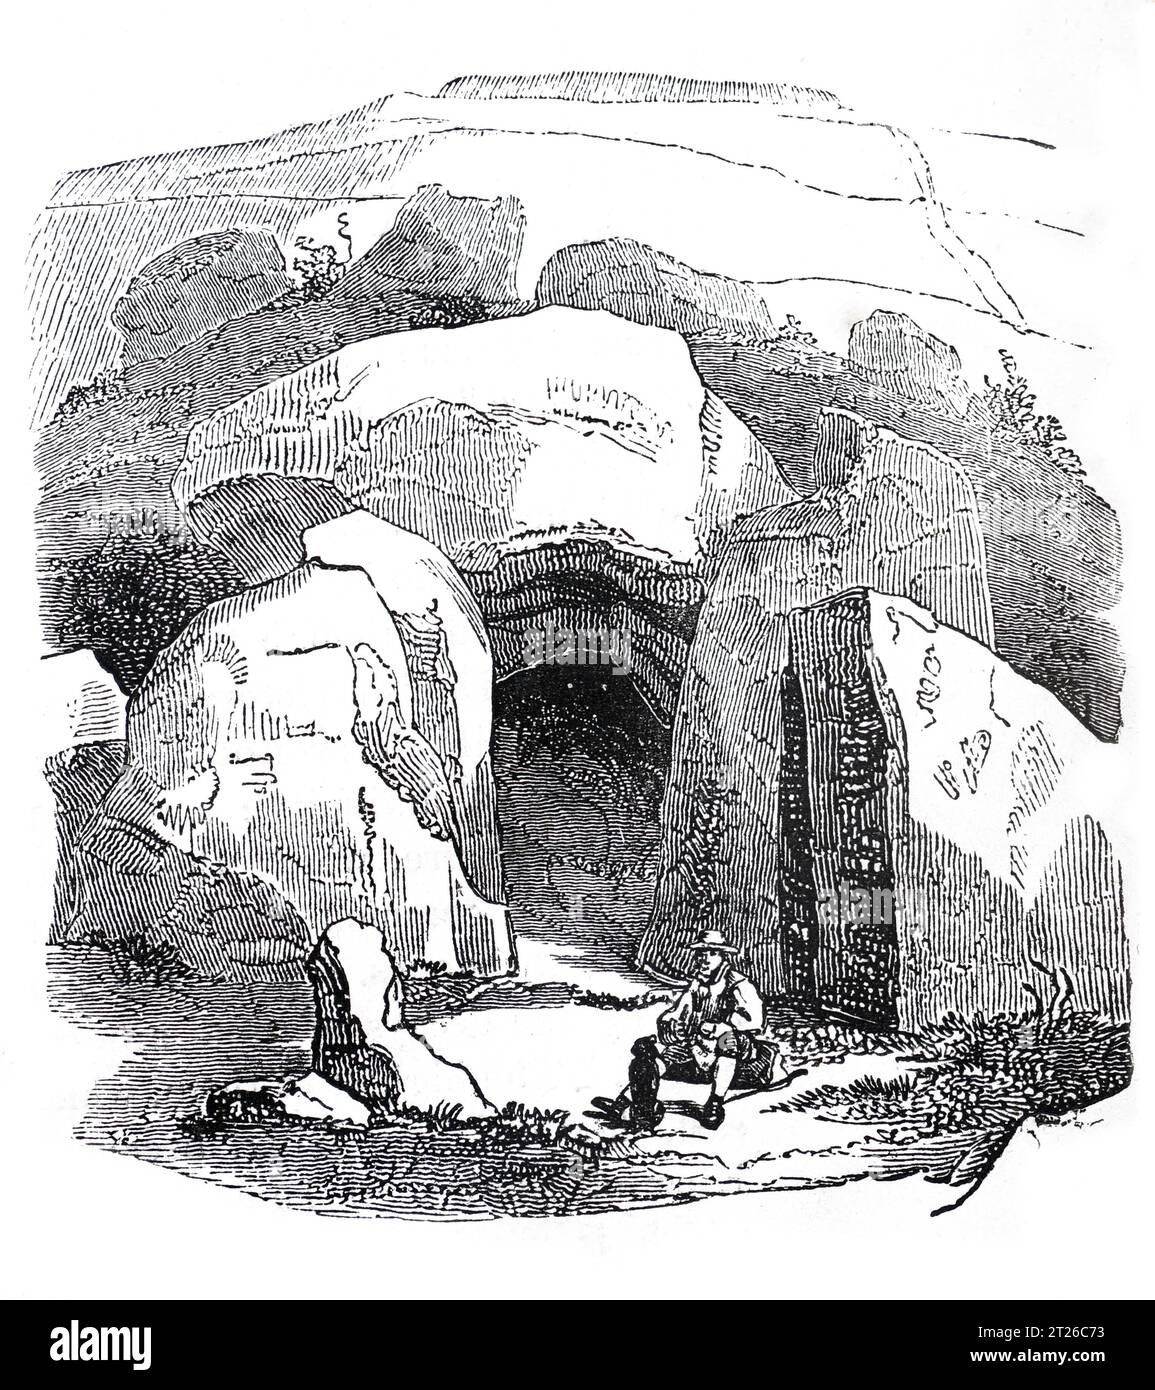 Wayland Smith's Cave, o Wayland's Smithy, Ashbury, Oxfordshire, una Long barrow a camere neolitiche, una volta si pensava fosse la casa di Wayland, il Dio sassone della lavorazione dei metalli. Black and White Illustration from the 'Old England' pubblicato da James Sangster nel 1860. Foto Stock